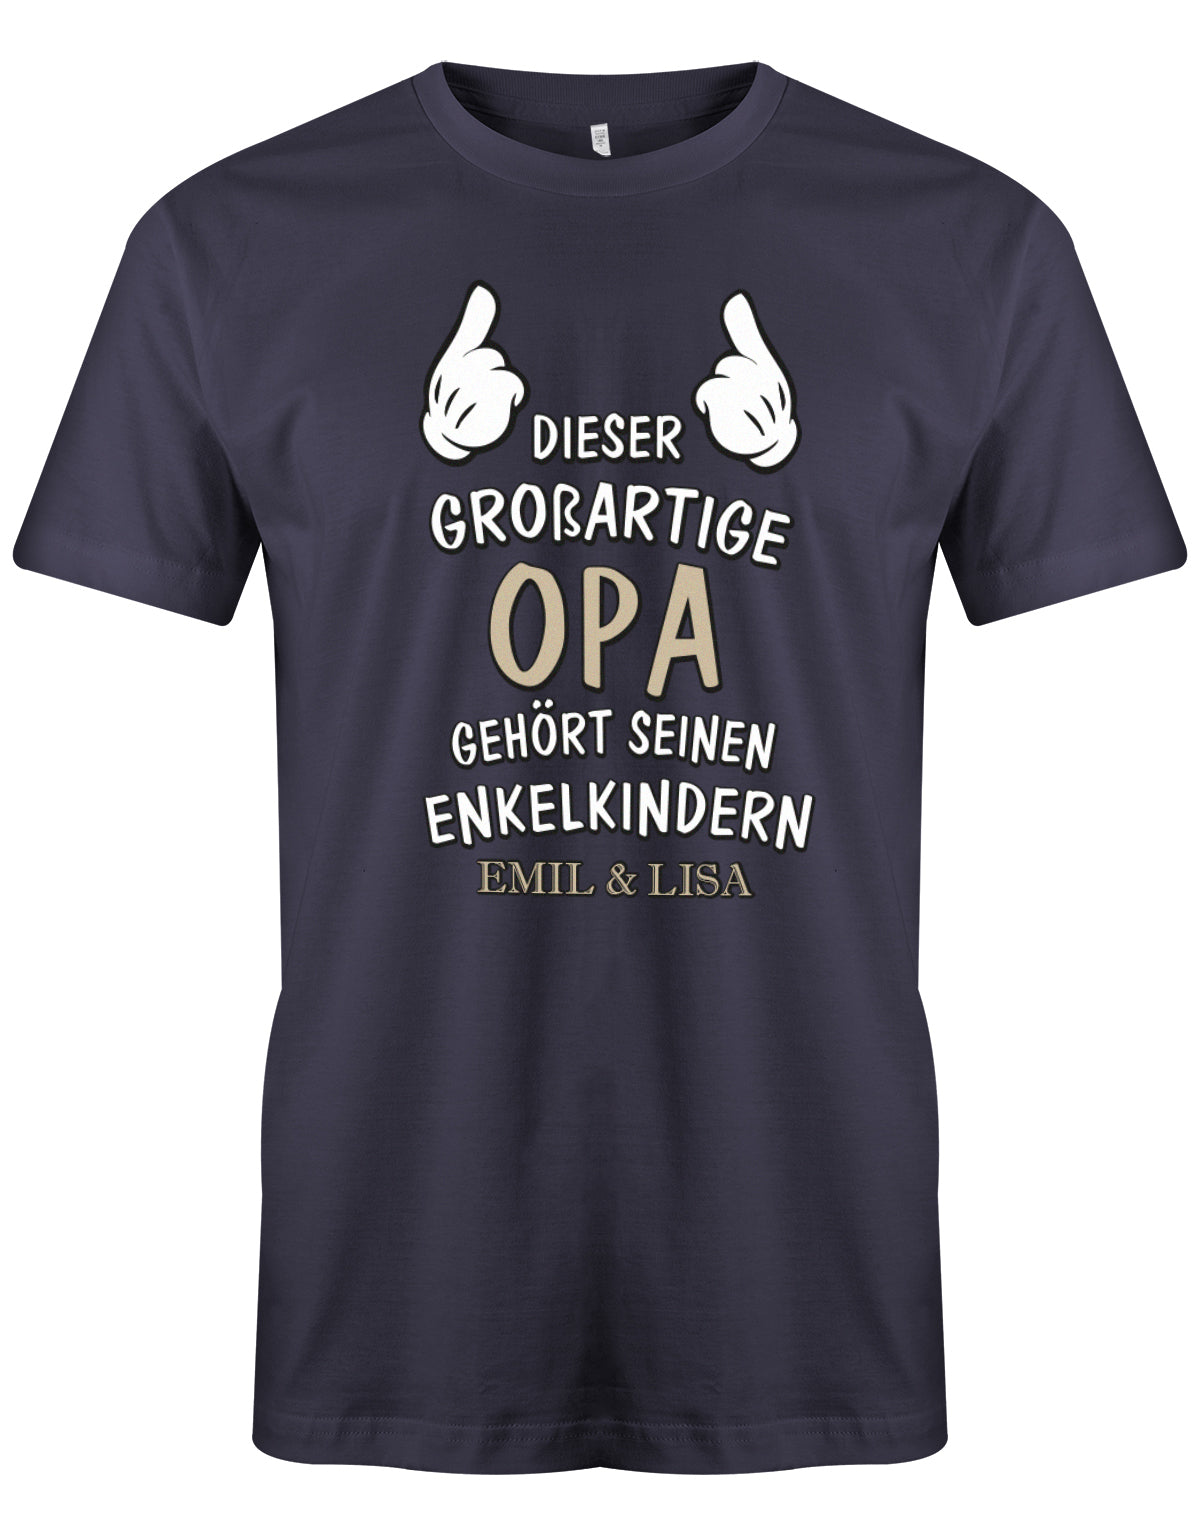 Opa Shirt personalisiert - Dieser großartige Opa gehört seinen Enkelkindern. Mit Namen der Enkel. navy